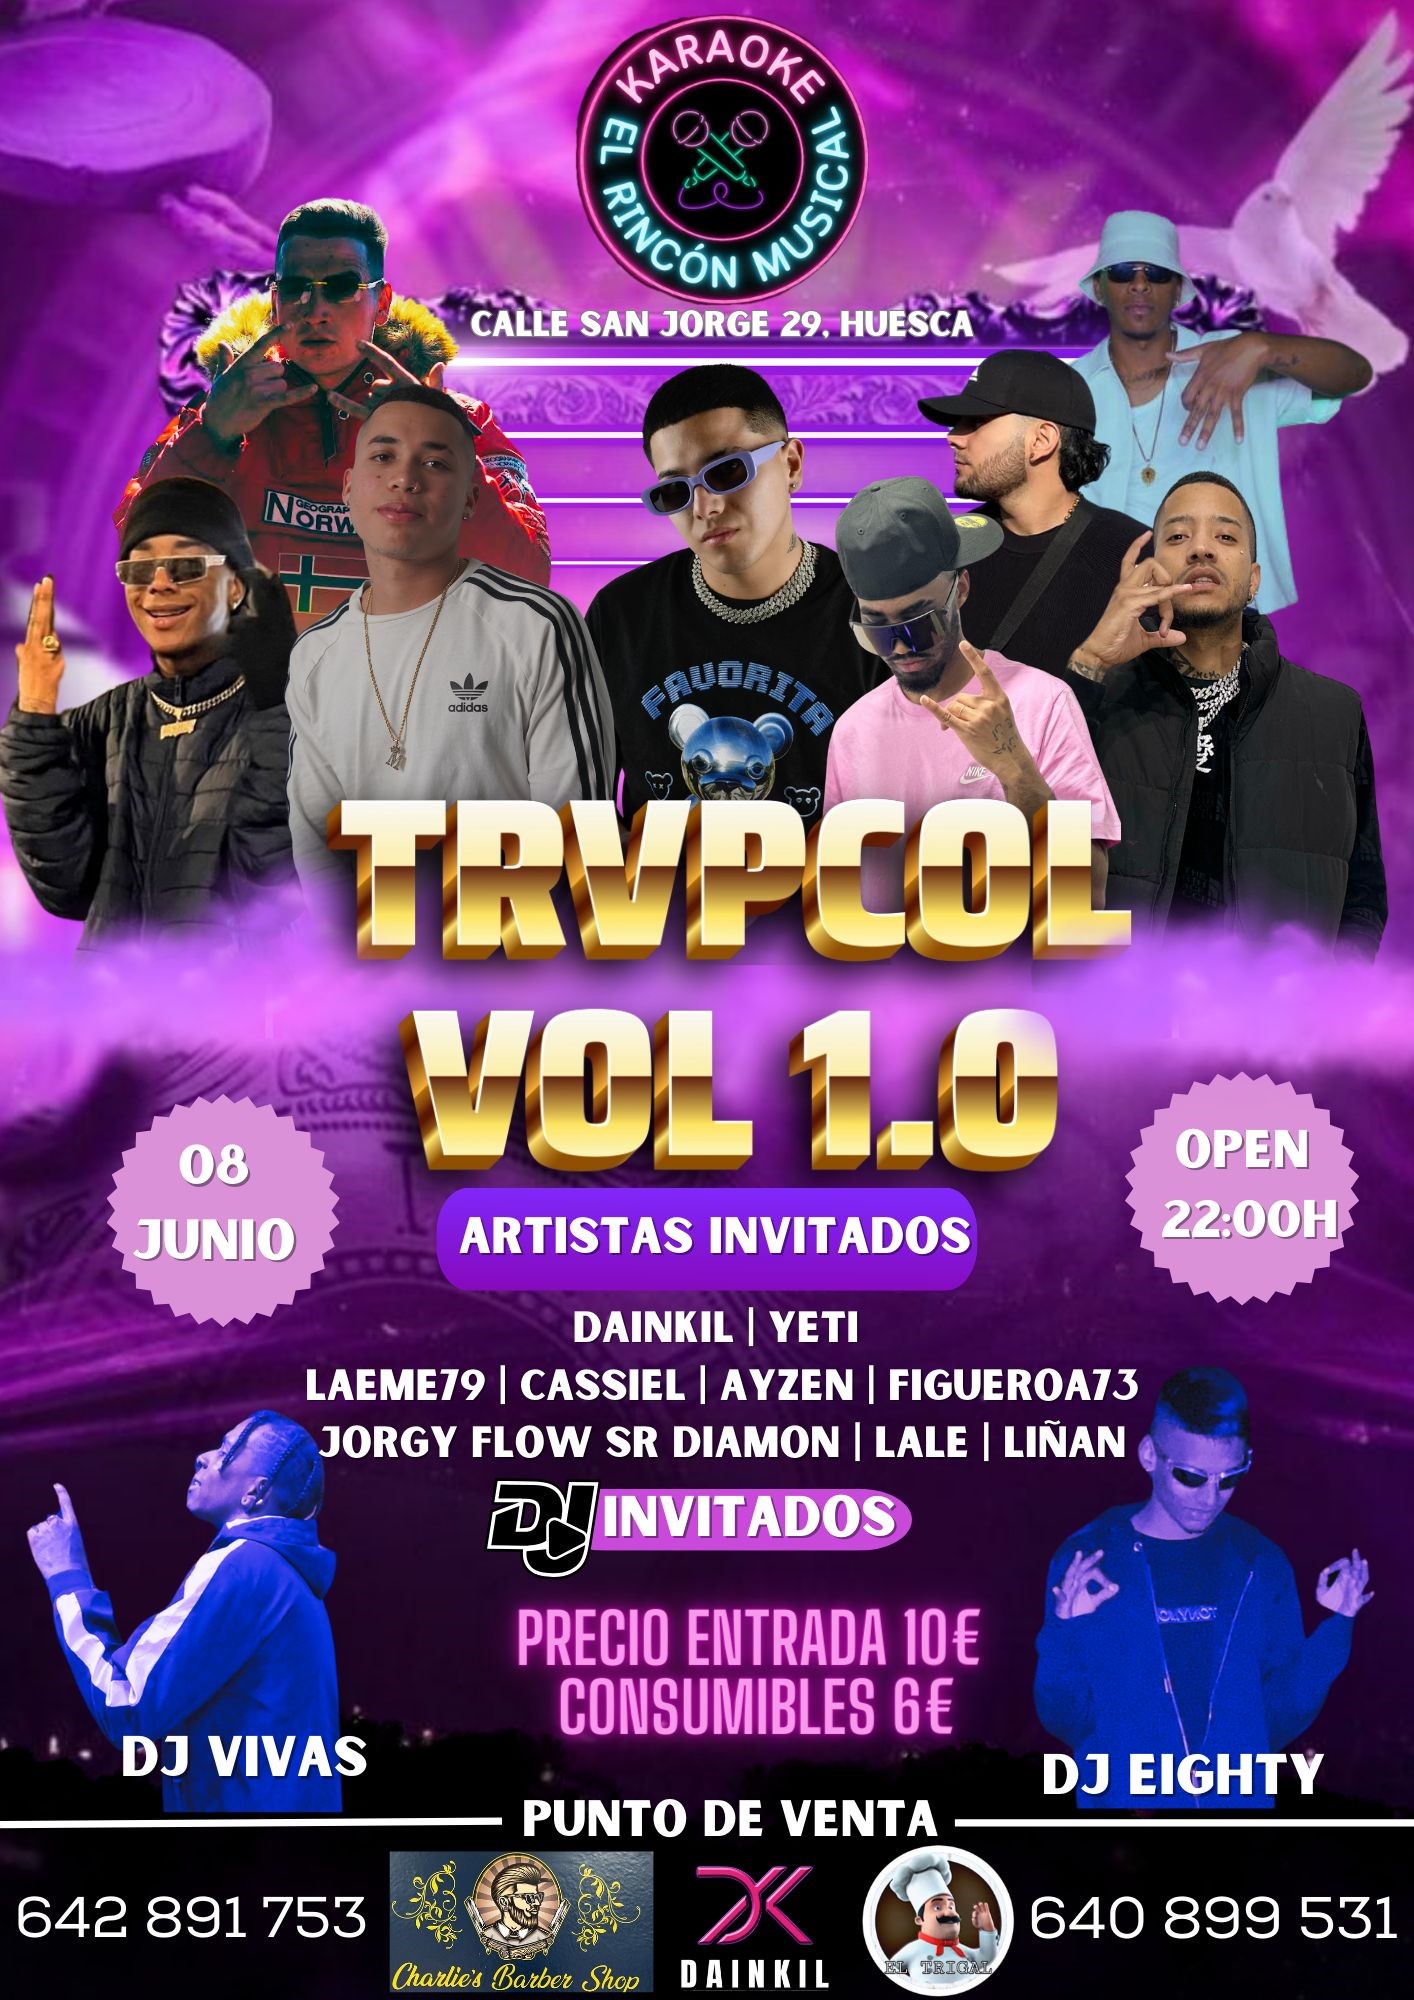 TRVPCOL VOL 1.0  on jun. 08, 00:00@Karaoke el Rincón Musical - Compra entradas y obtén información enkaraoke_elrinconmusical 